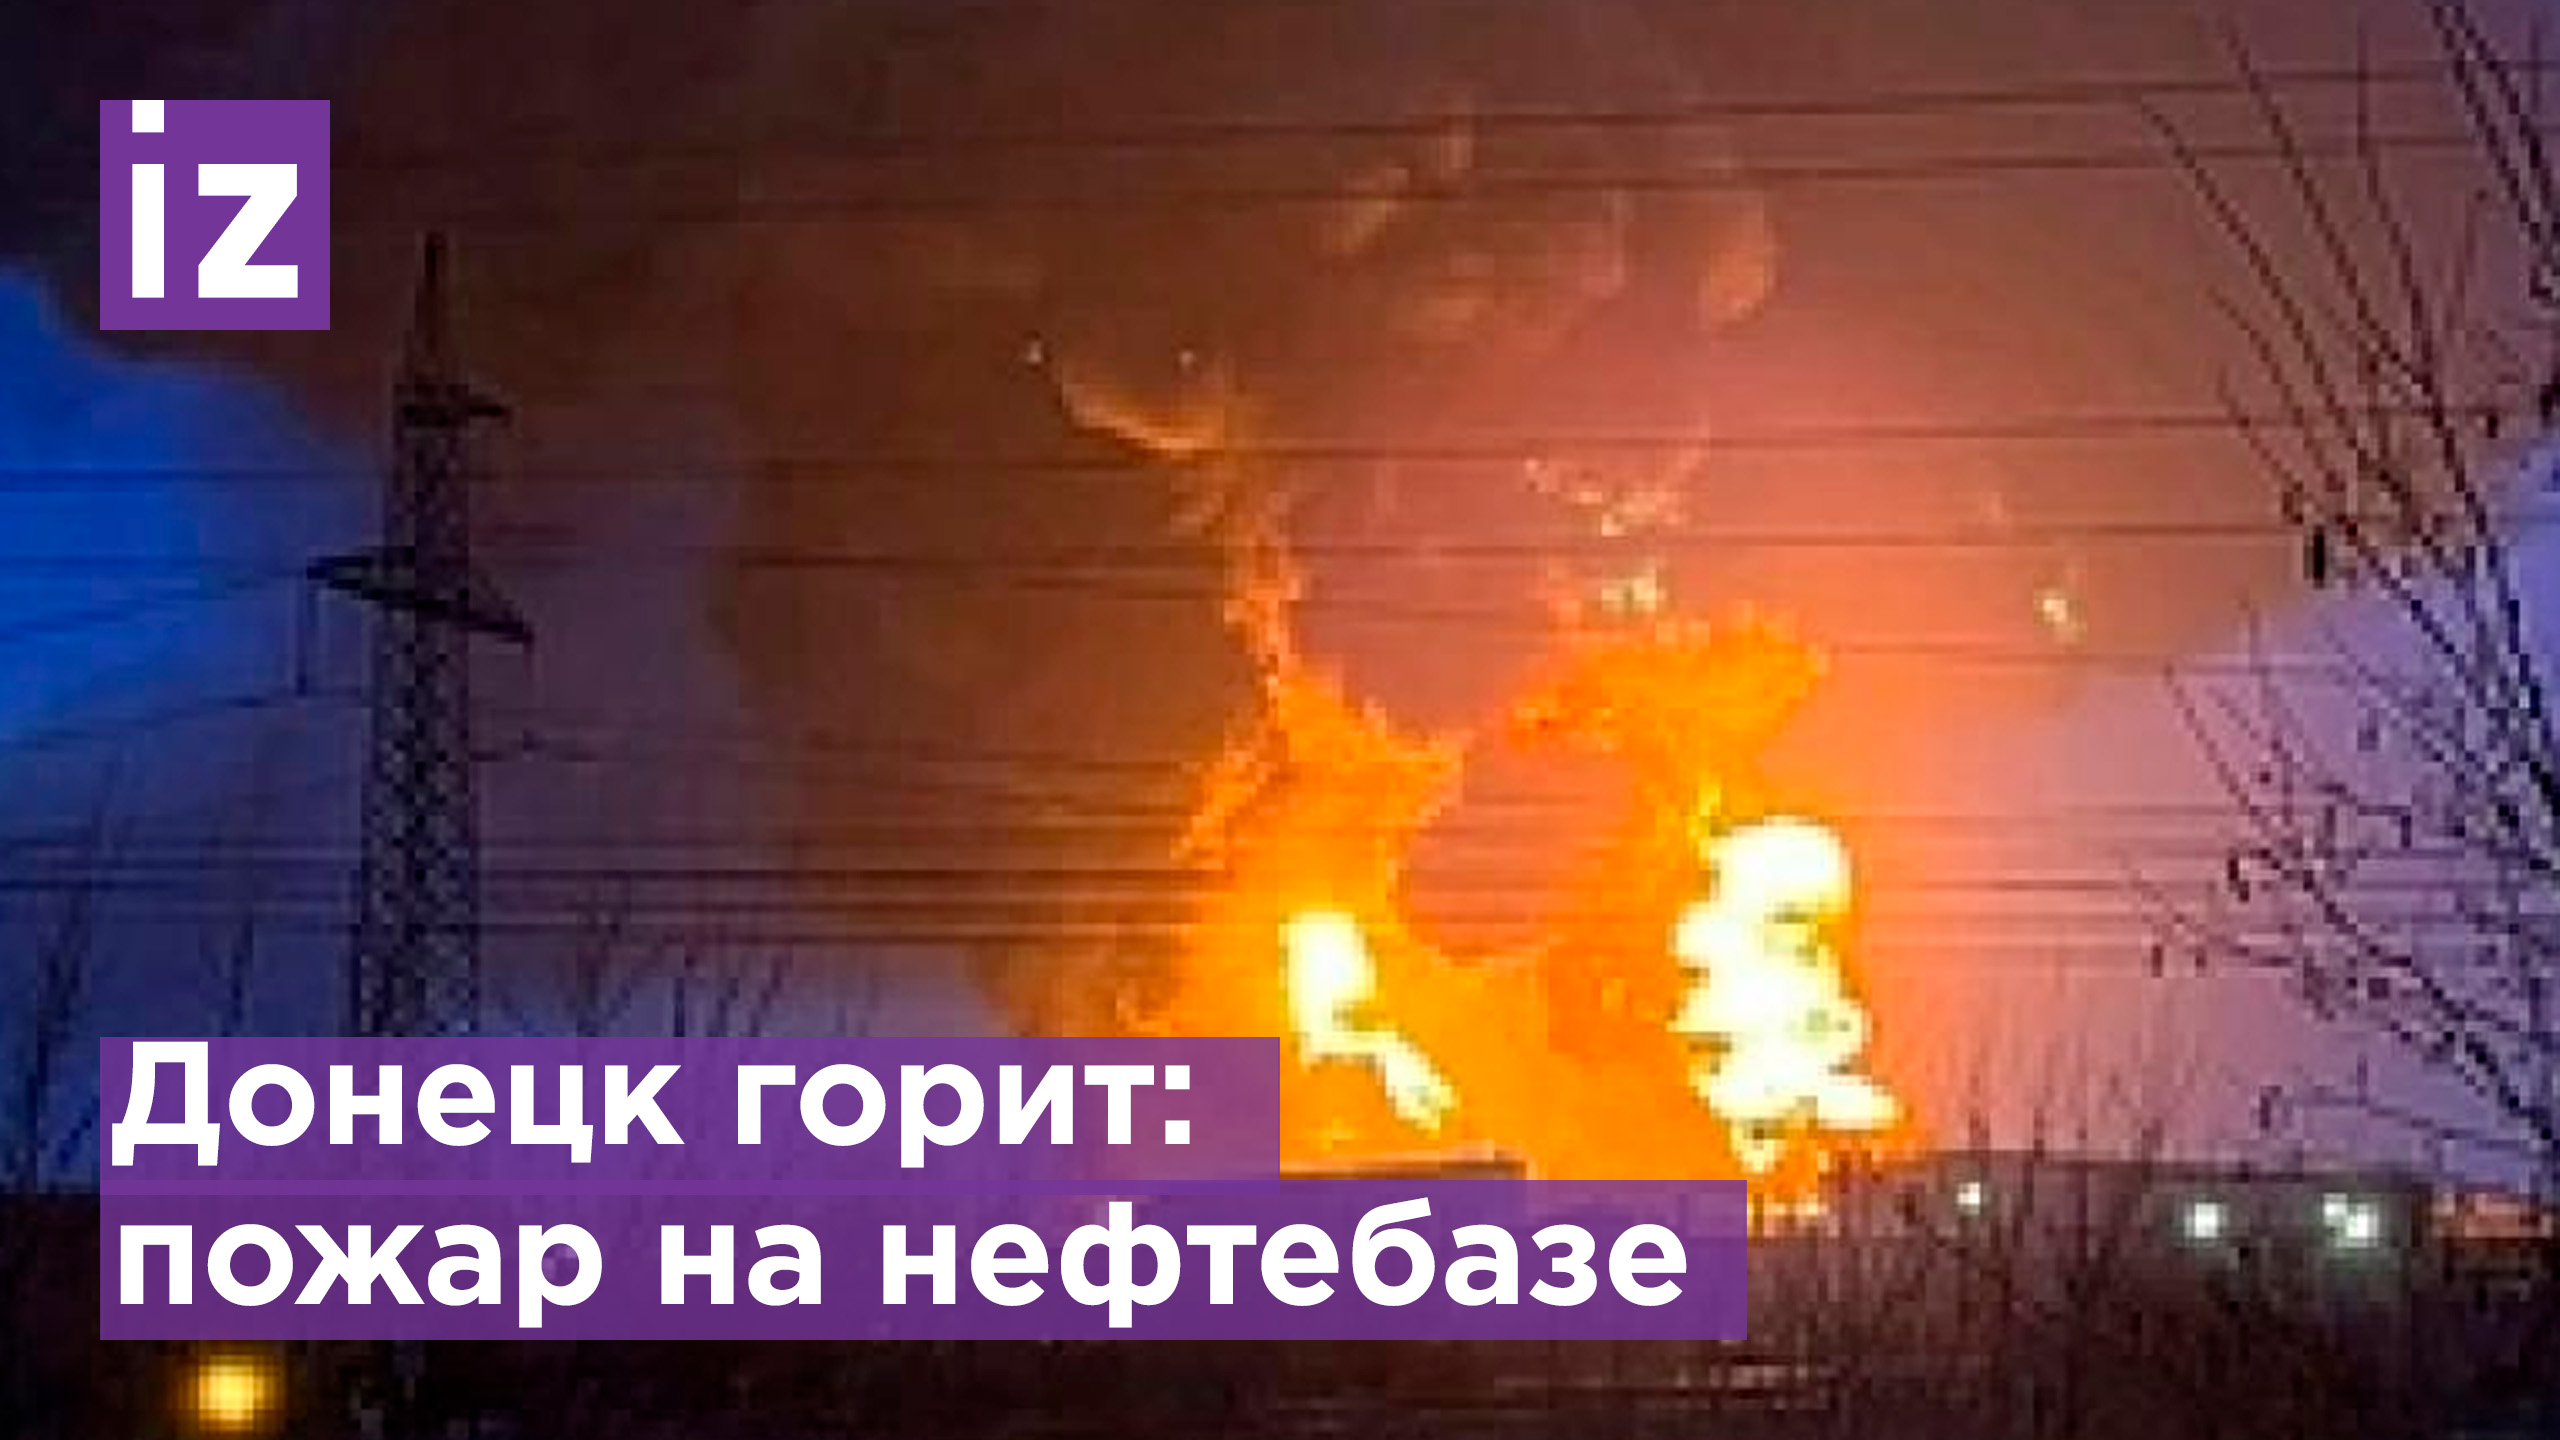 Пожар на нефтебазе в Донецке / Известия